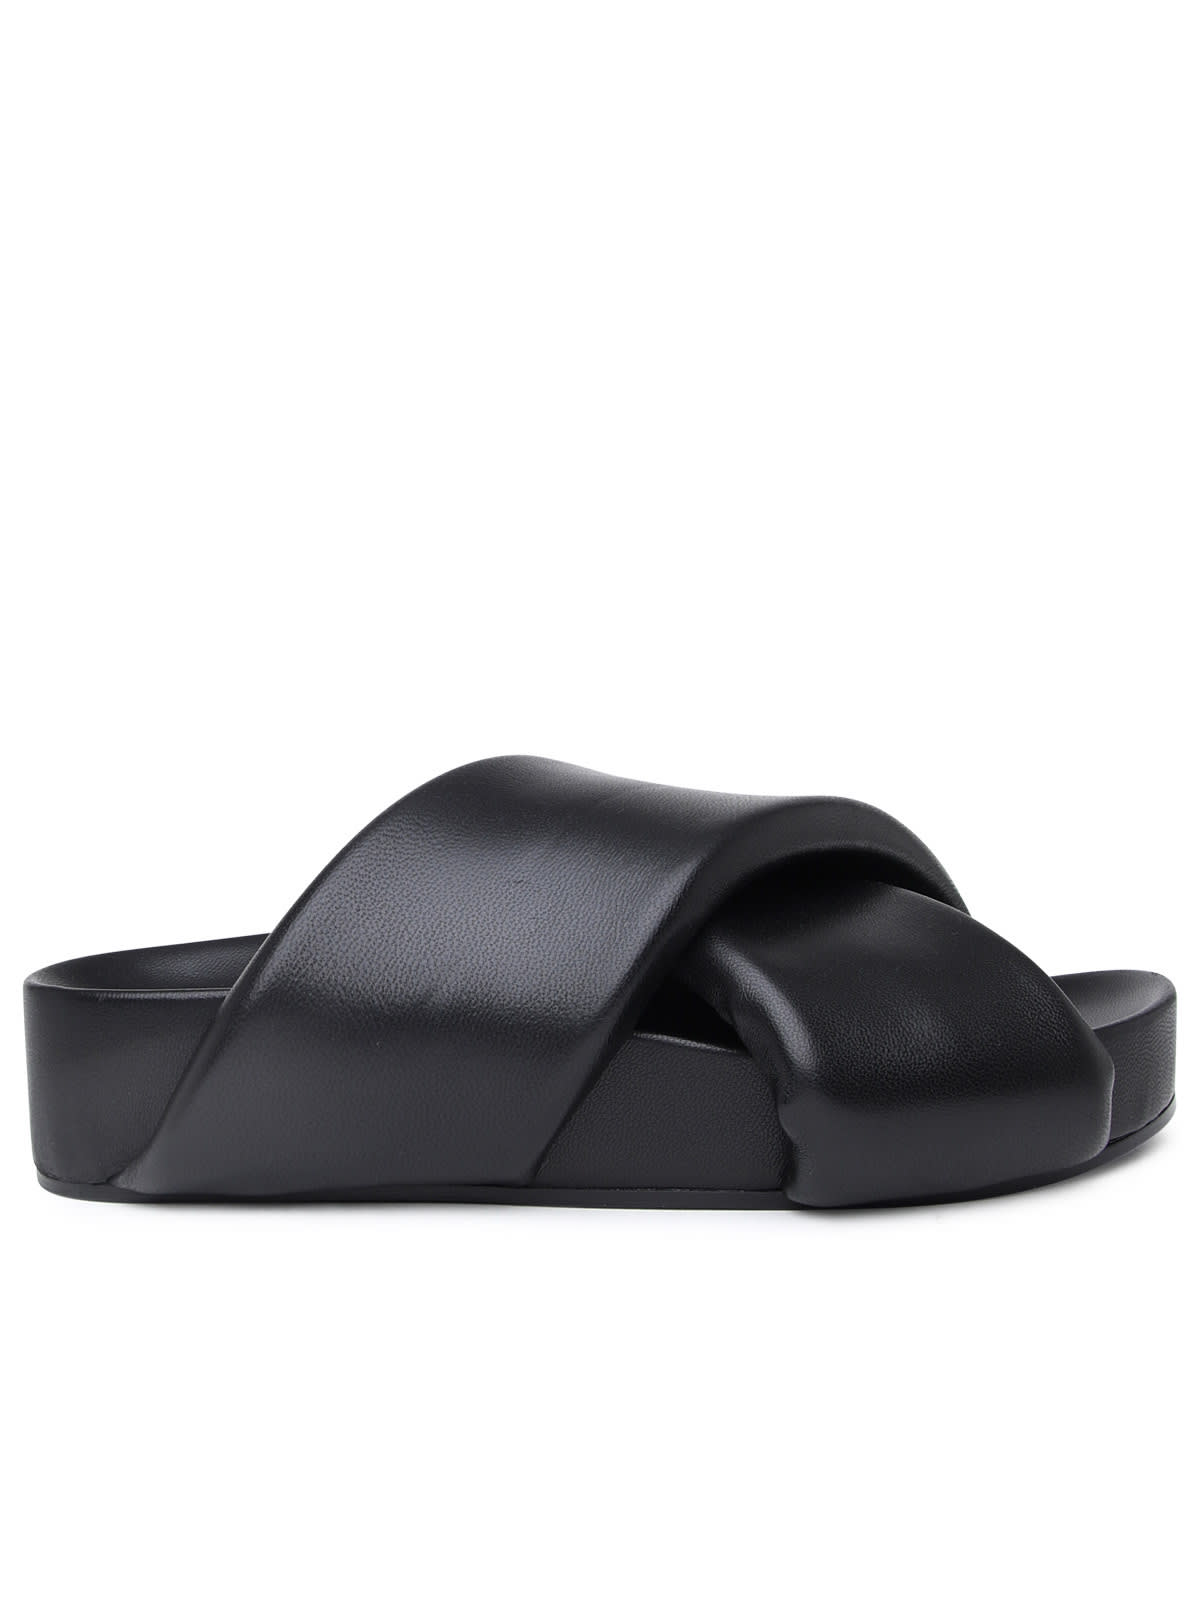 Jil Sander Flip Flops In Black Leather